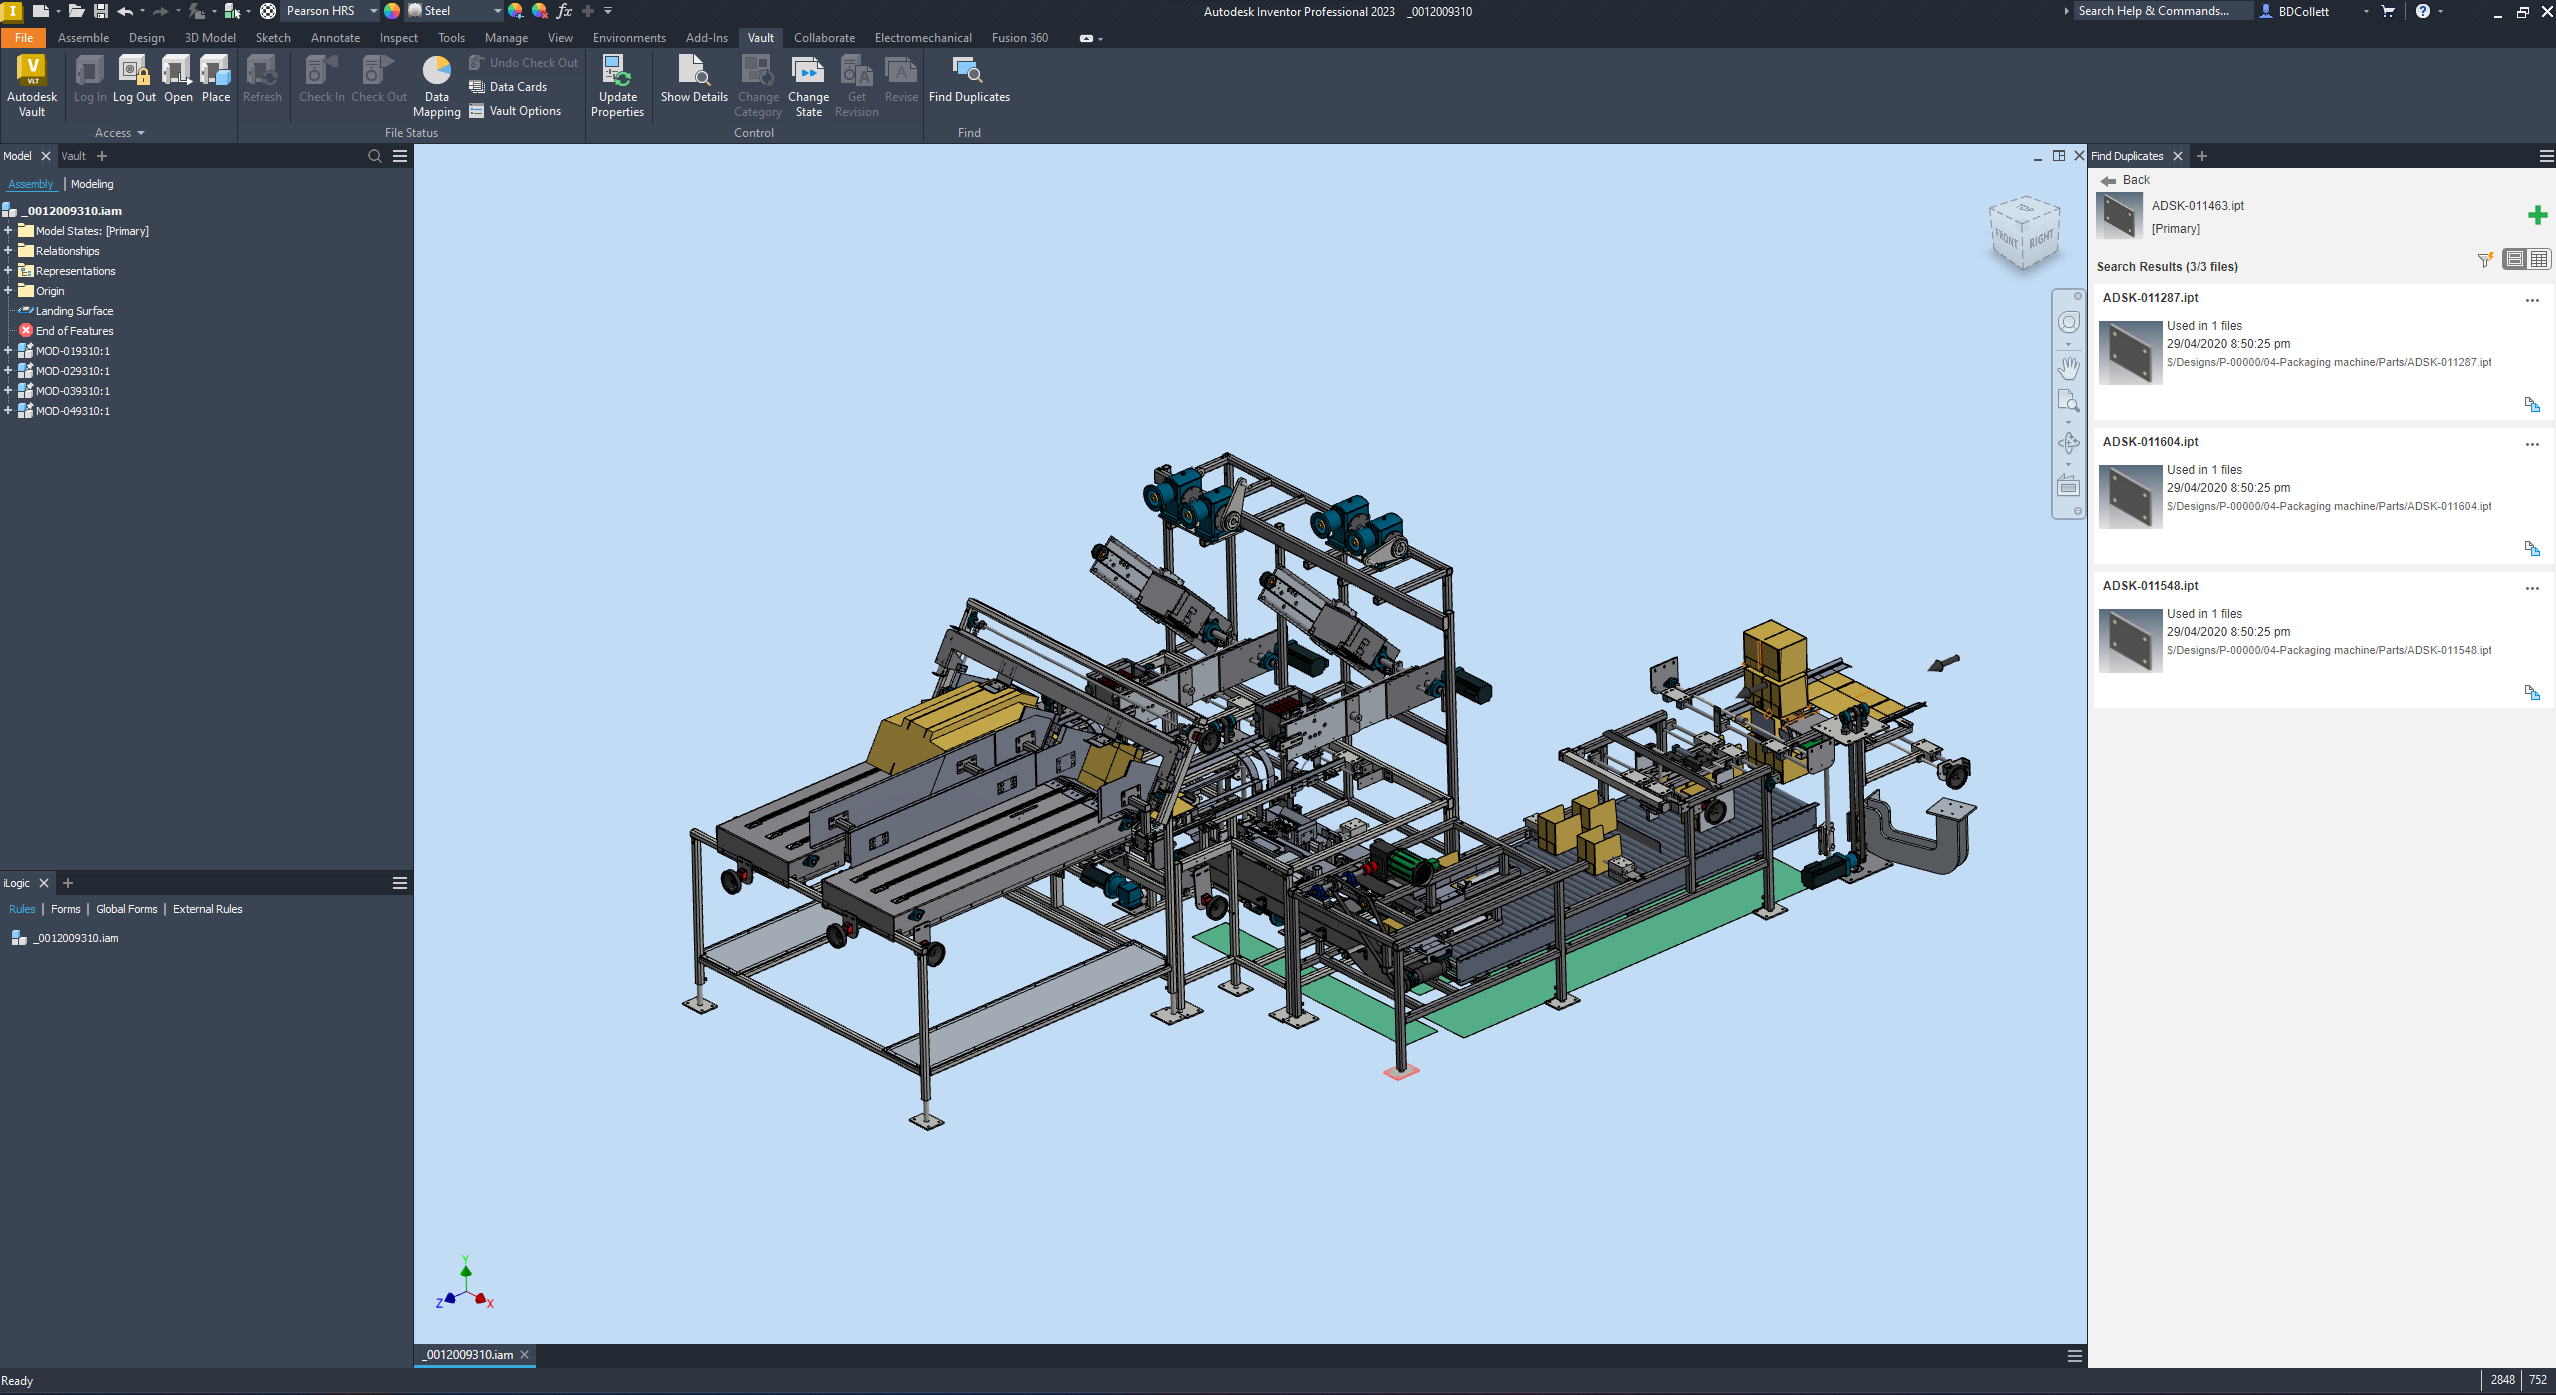 screenshot of 3D model in autodesk vault